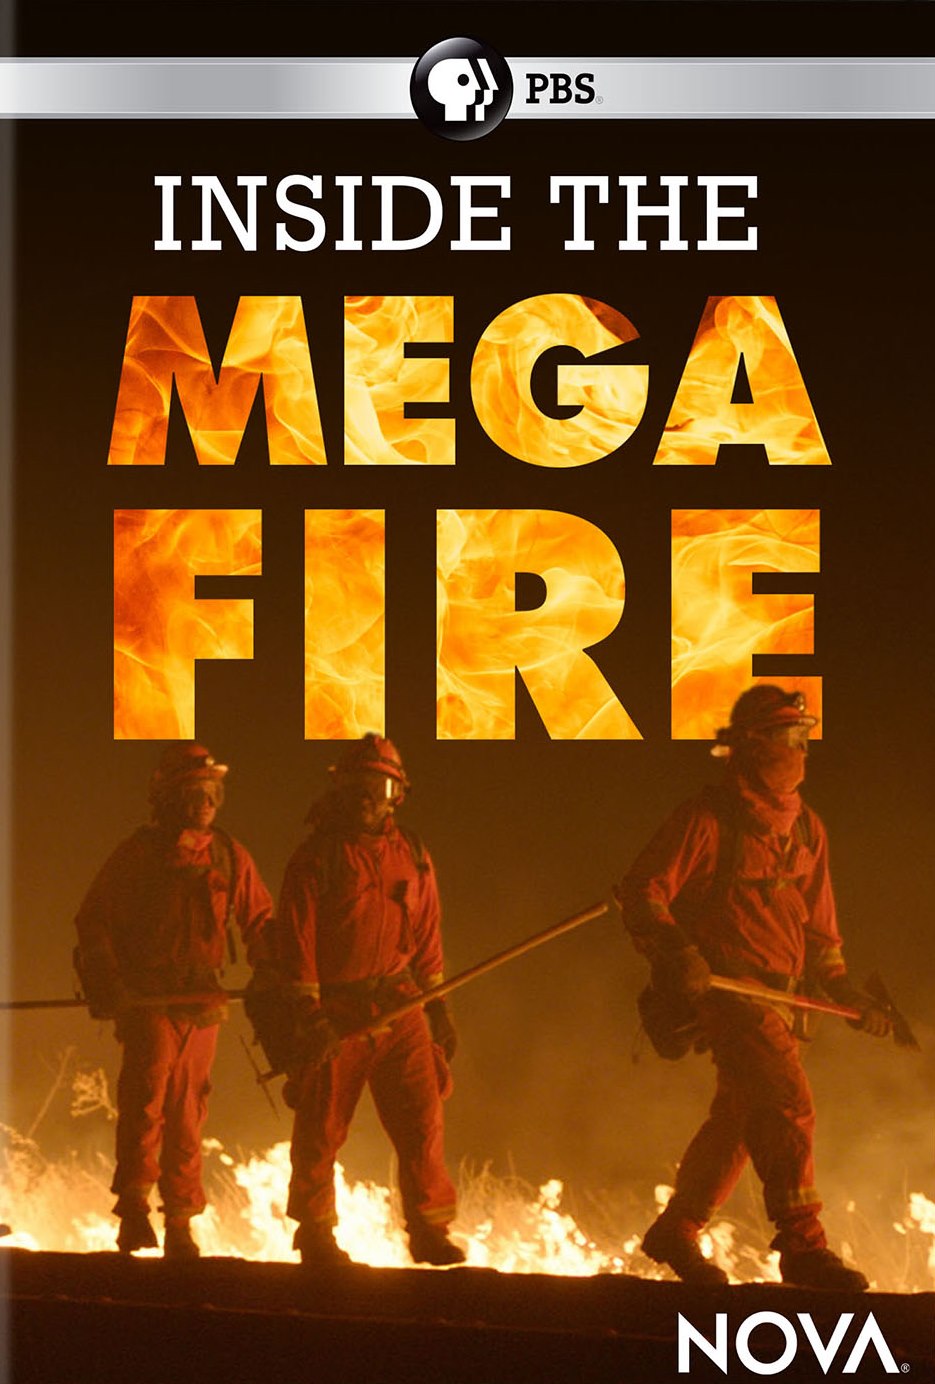 NOVA: Inside the Megafire cover art